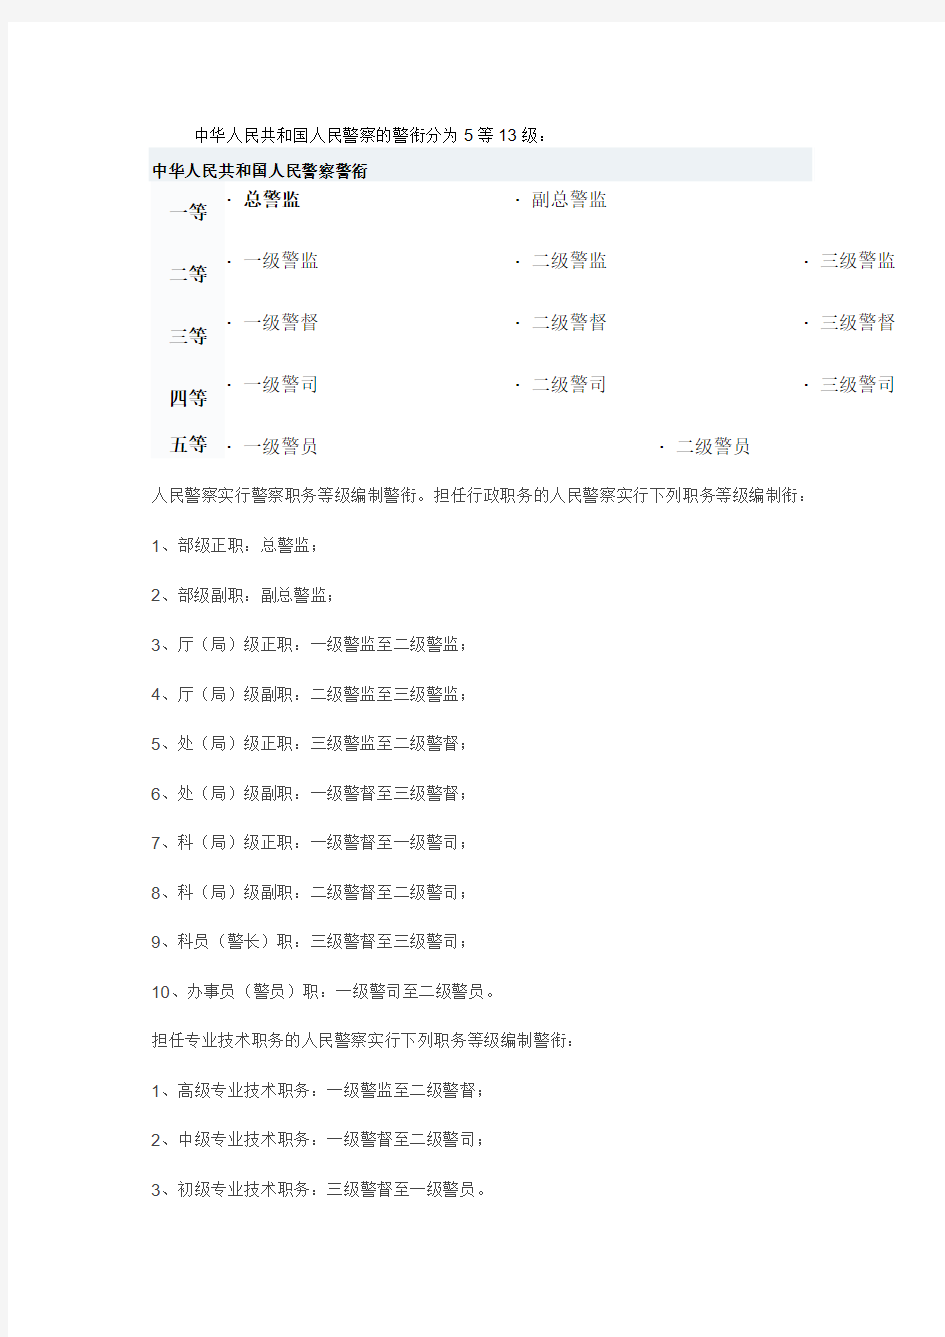 中华人民共和国人民警察的警衔分为5等13级